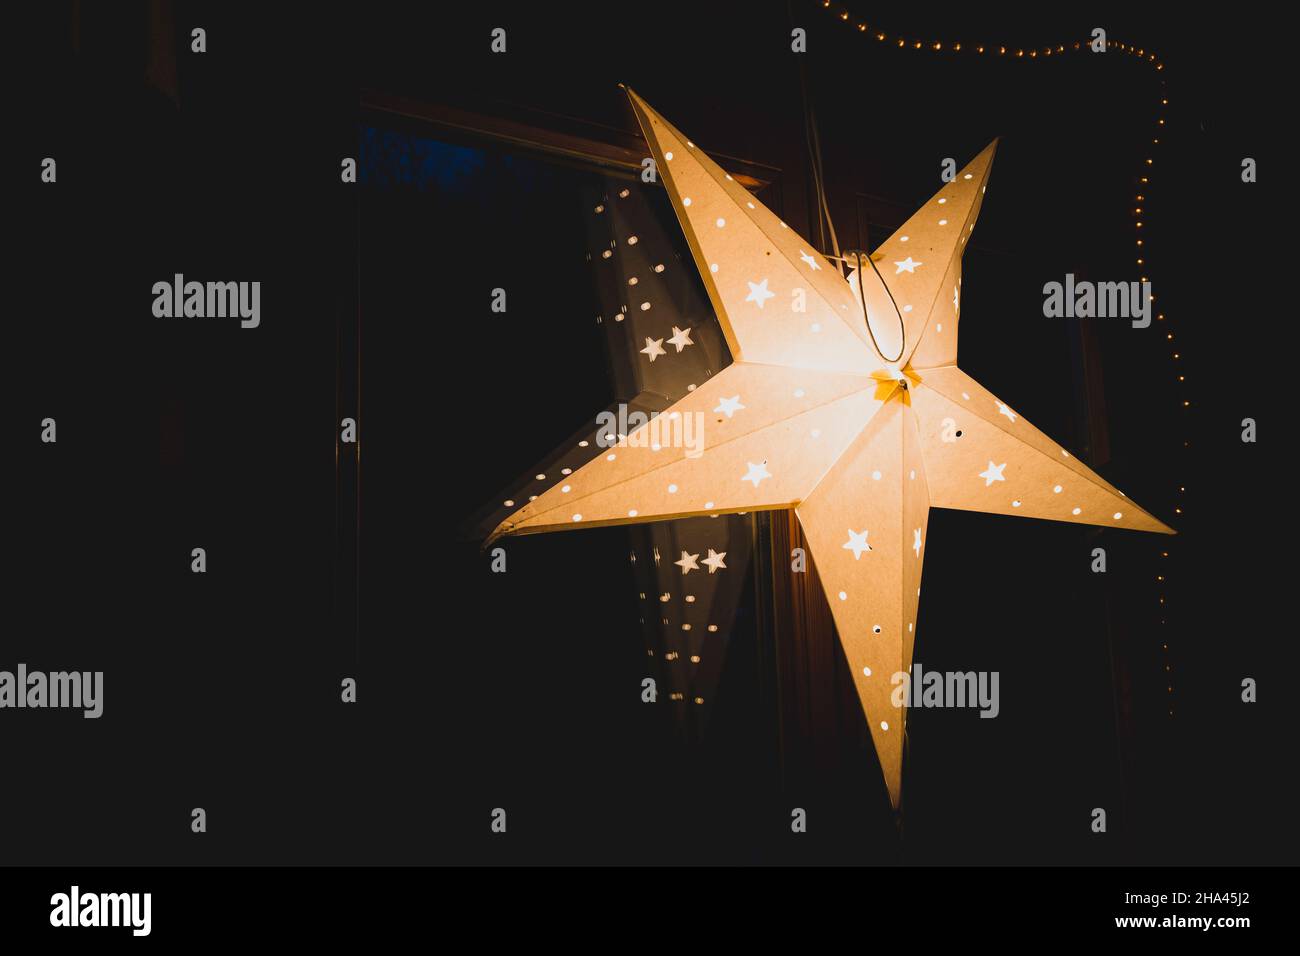 Vacances saison étoile lumineuse décoration sombre lumière ambiance Banque D'Images